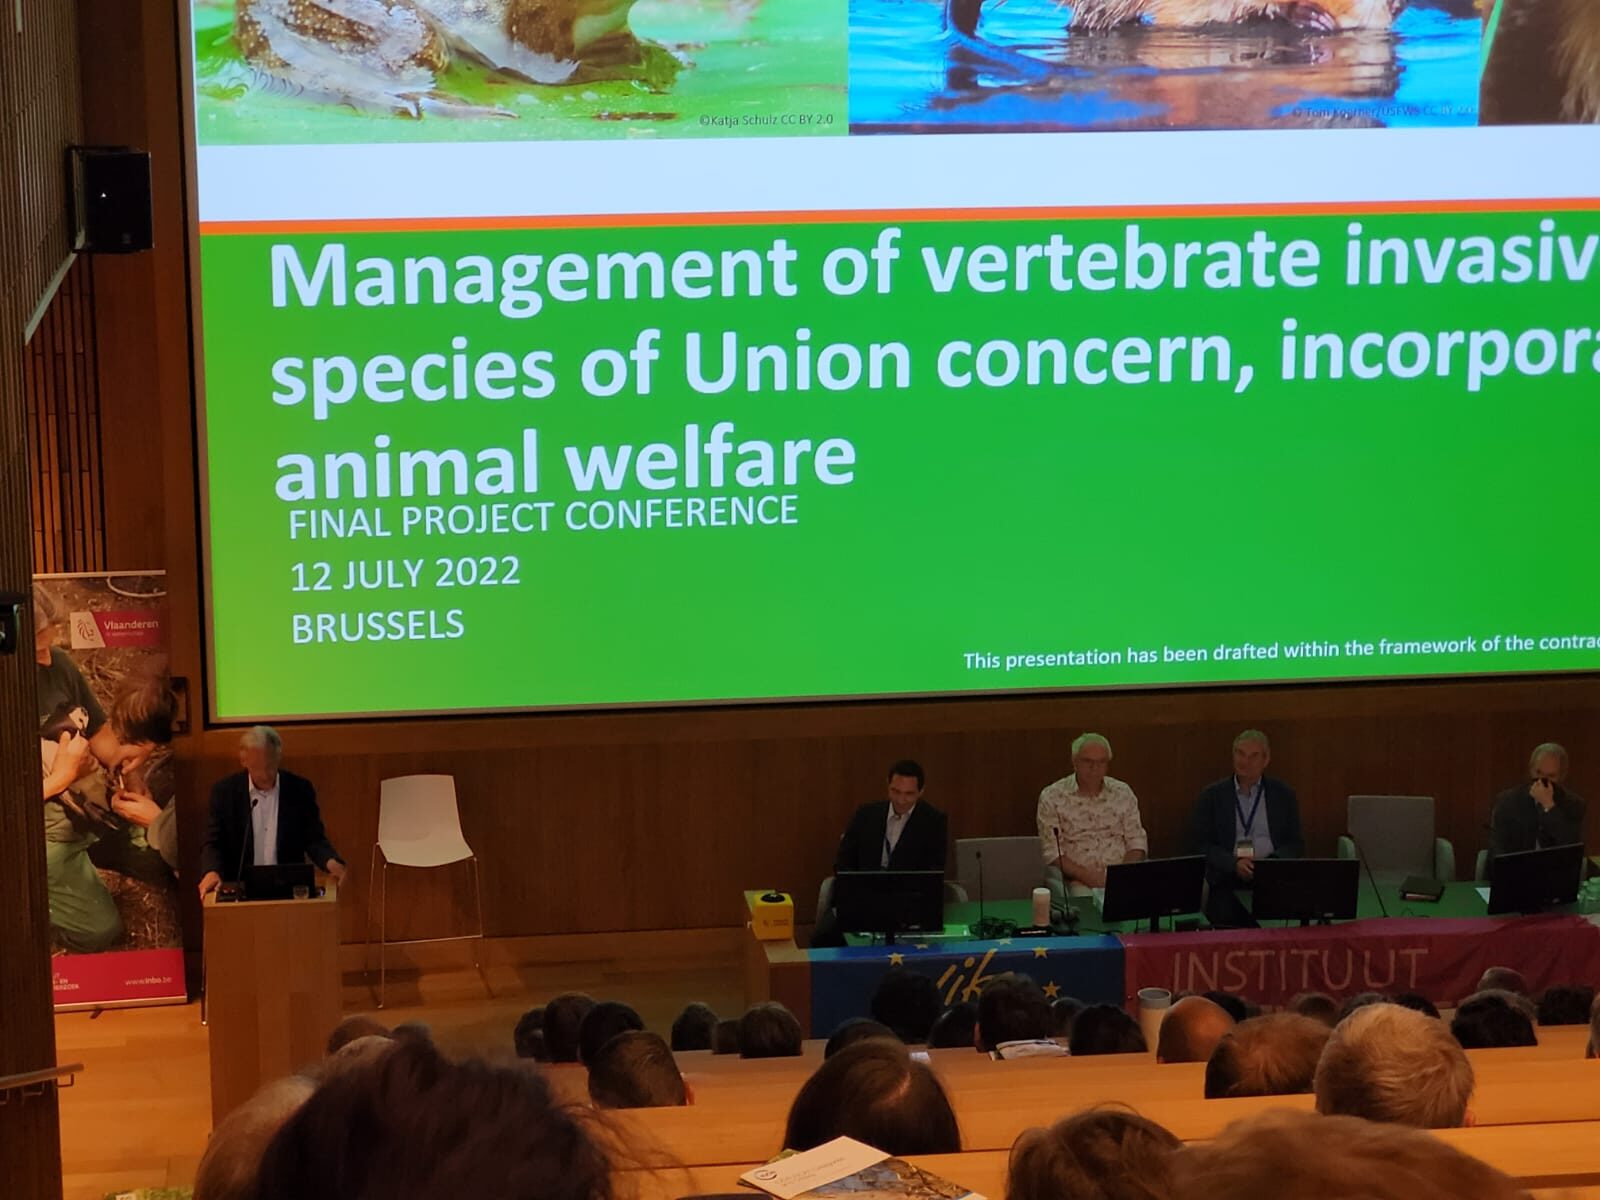 Konferencja na temat zarządzania inwazyjnymi gatunkami obcymi kręgowców stwarzających zagrożenie dla Unii, uwzględniająca dobrostan zwierząt - 12.07.2022